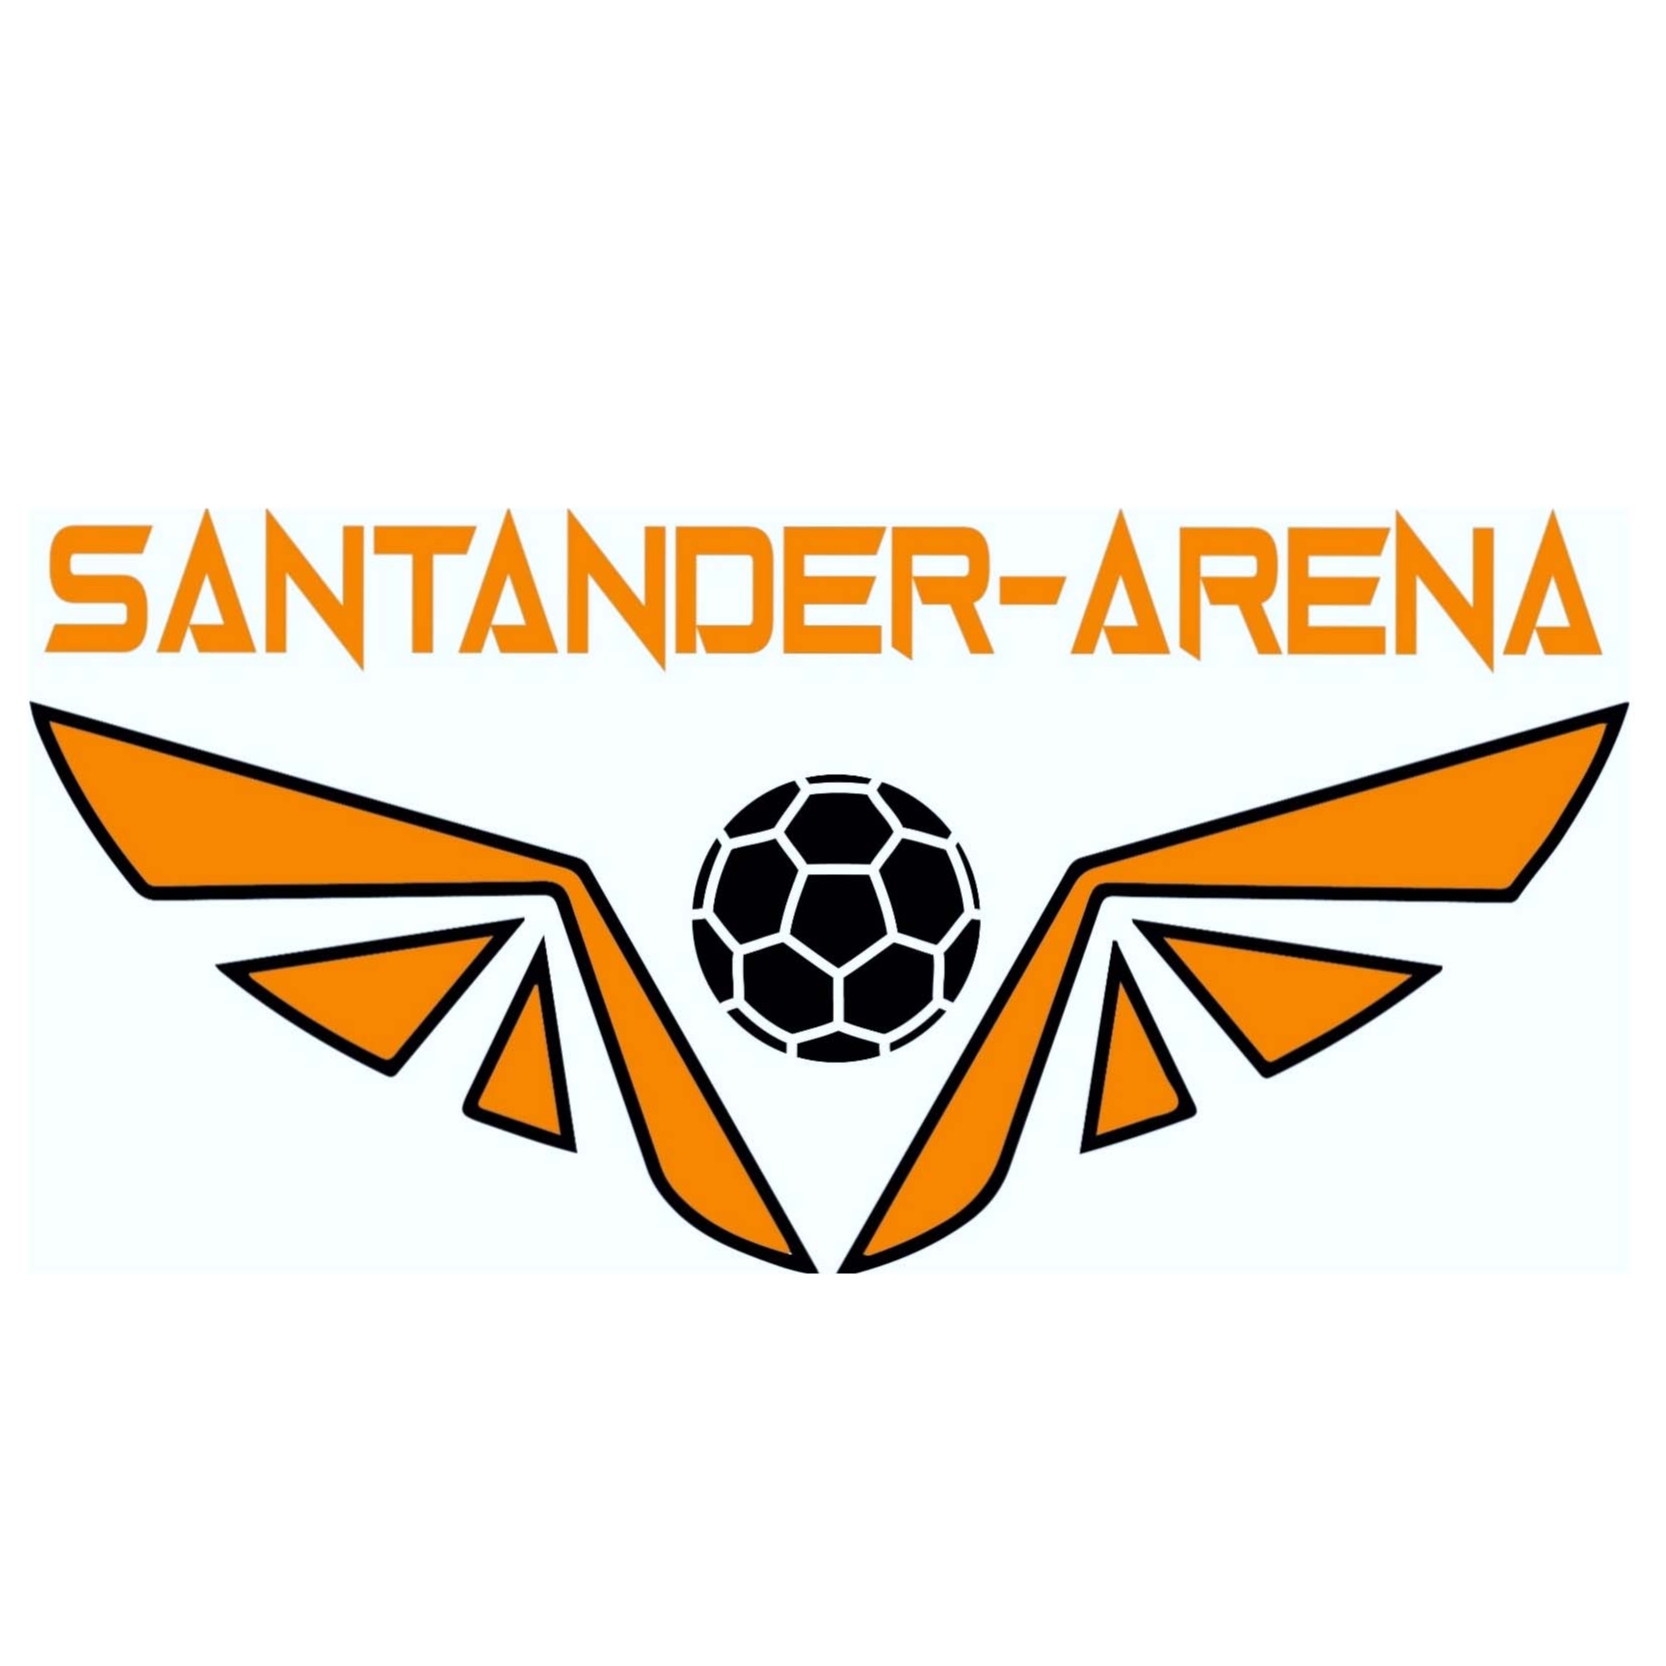 Santander-Arena